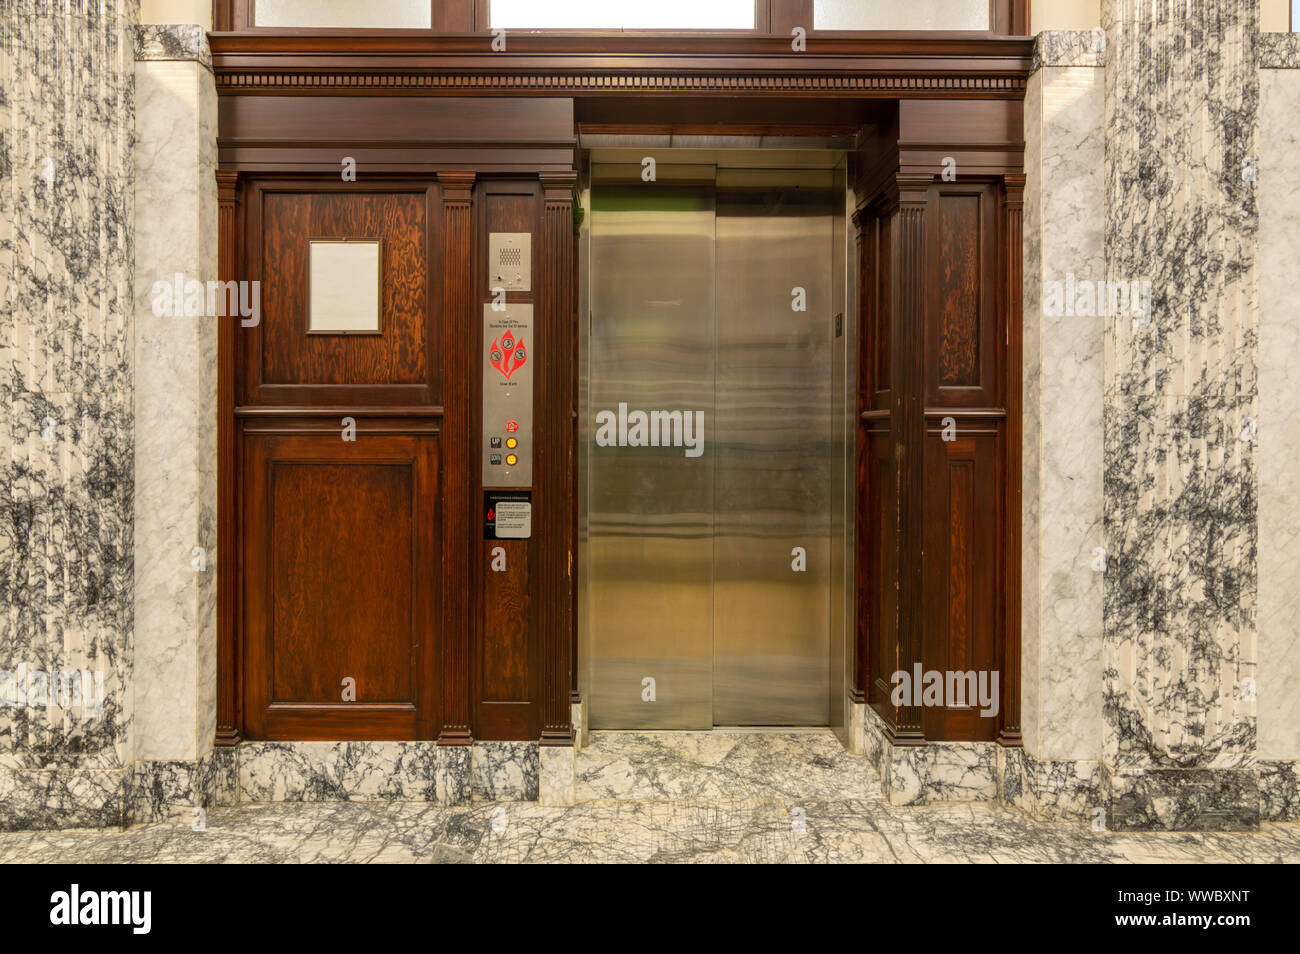 Ancien ascenseur avec portes en métal et bois résineux Banque D'Images